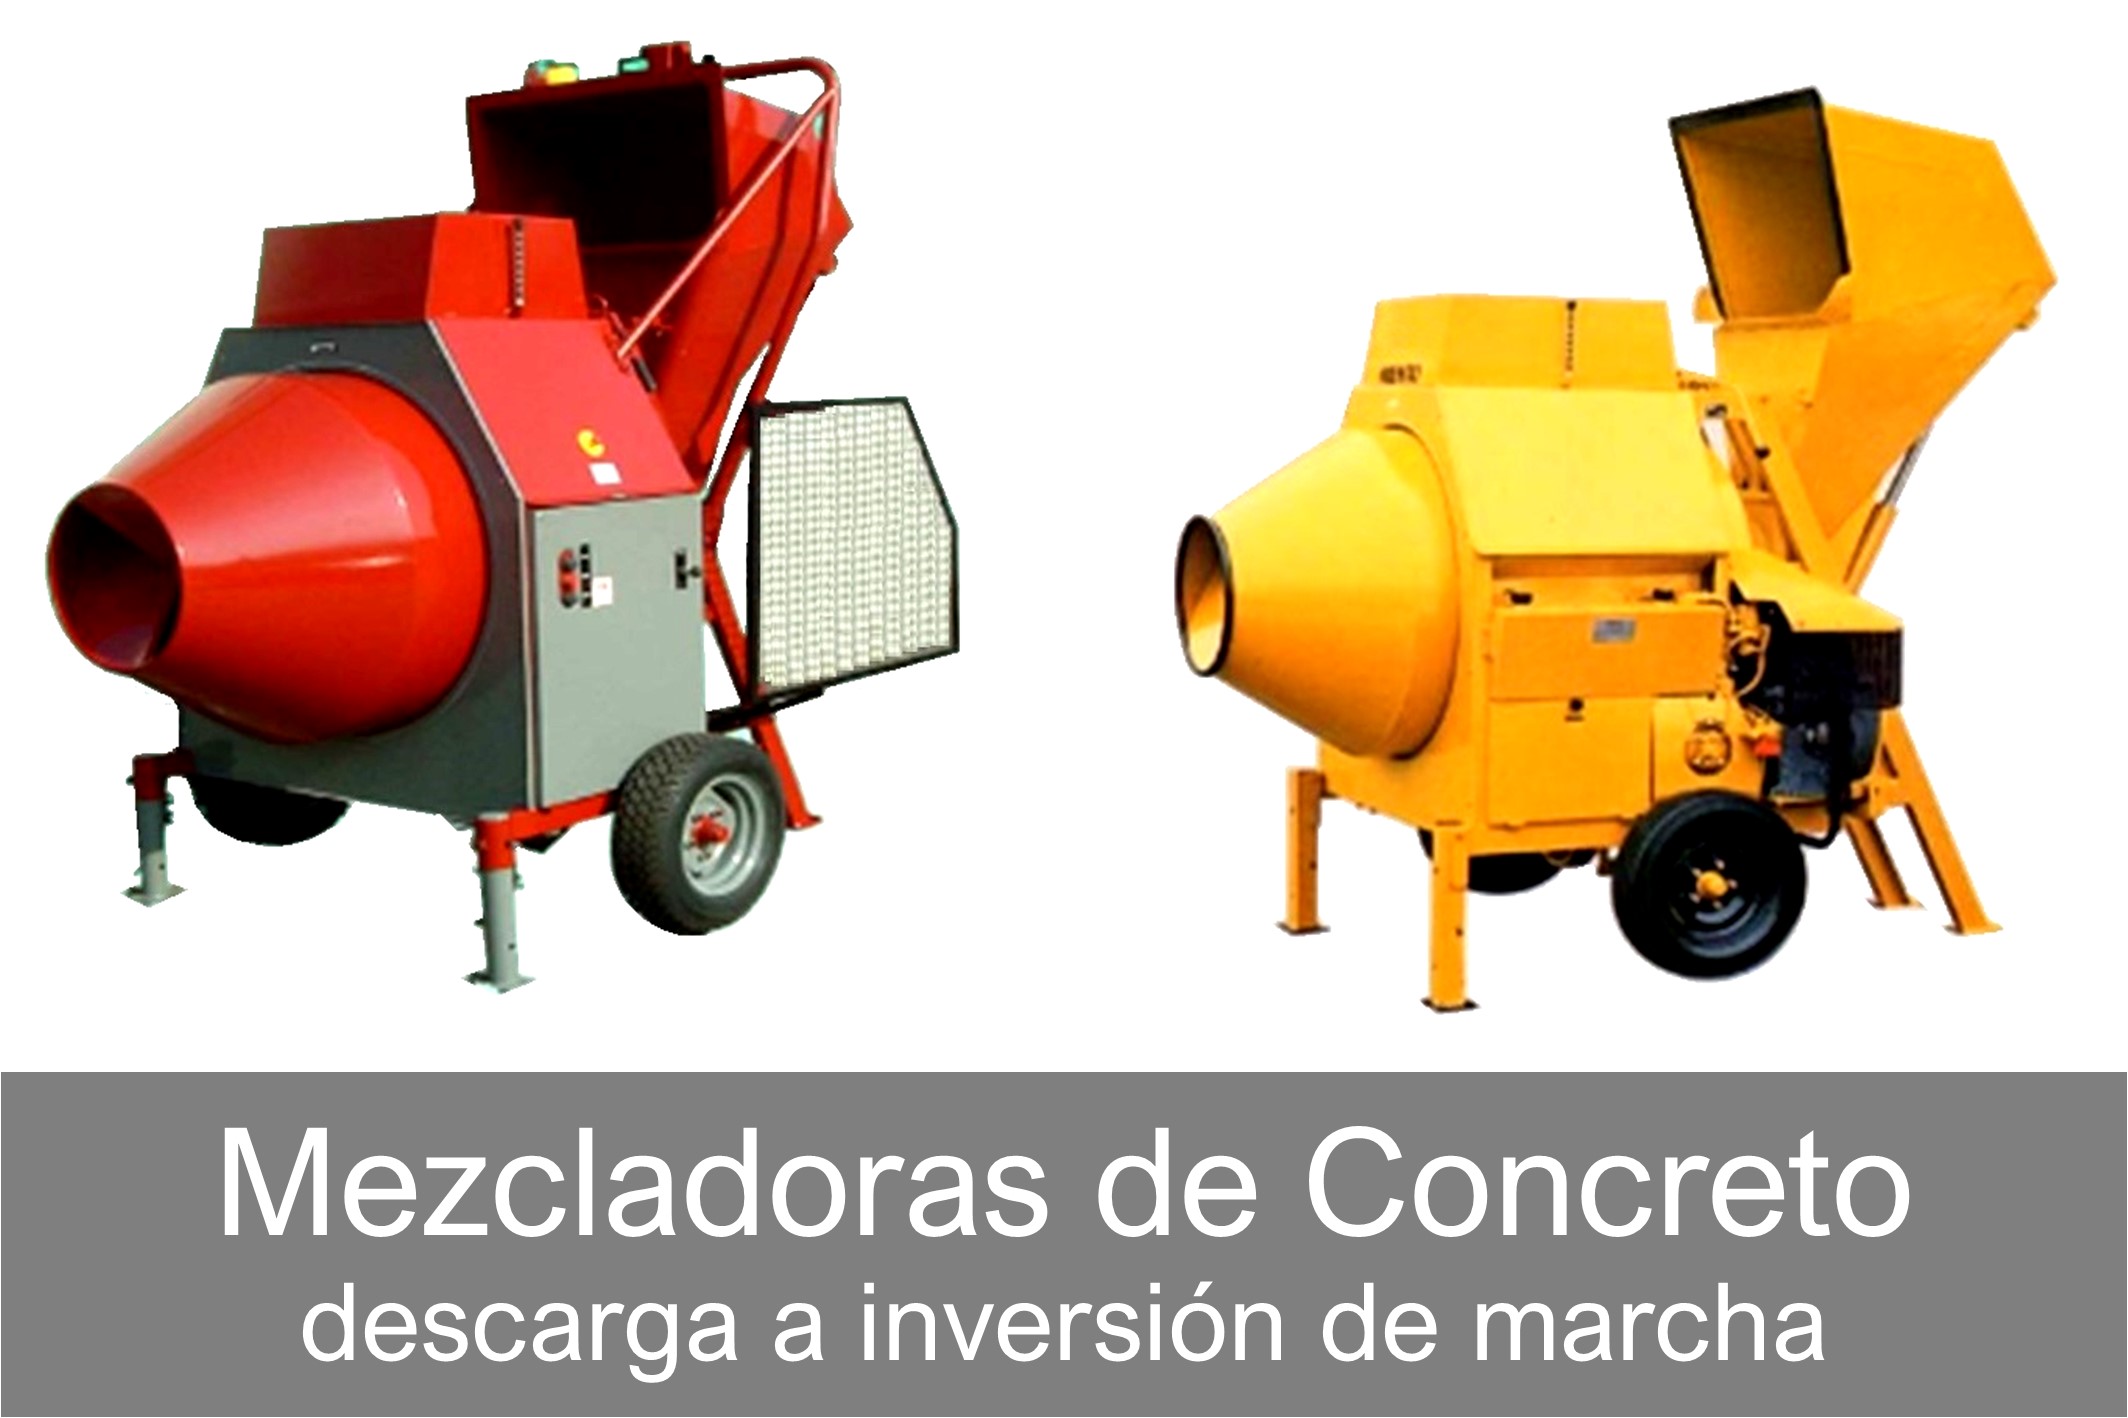 Mezcladoras de Concreto - Baja Producción a Inversión de Marcha